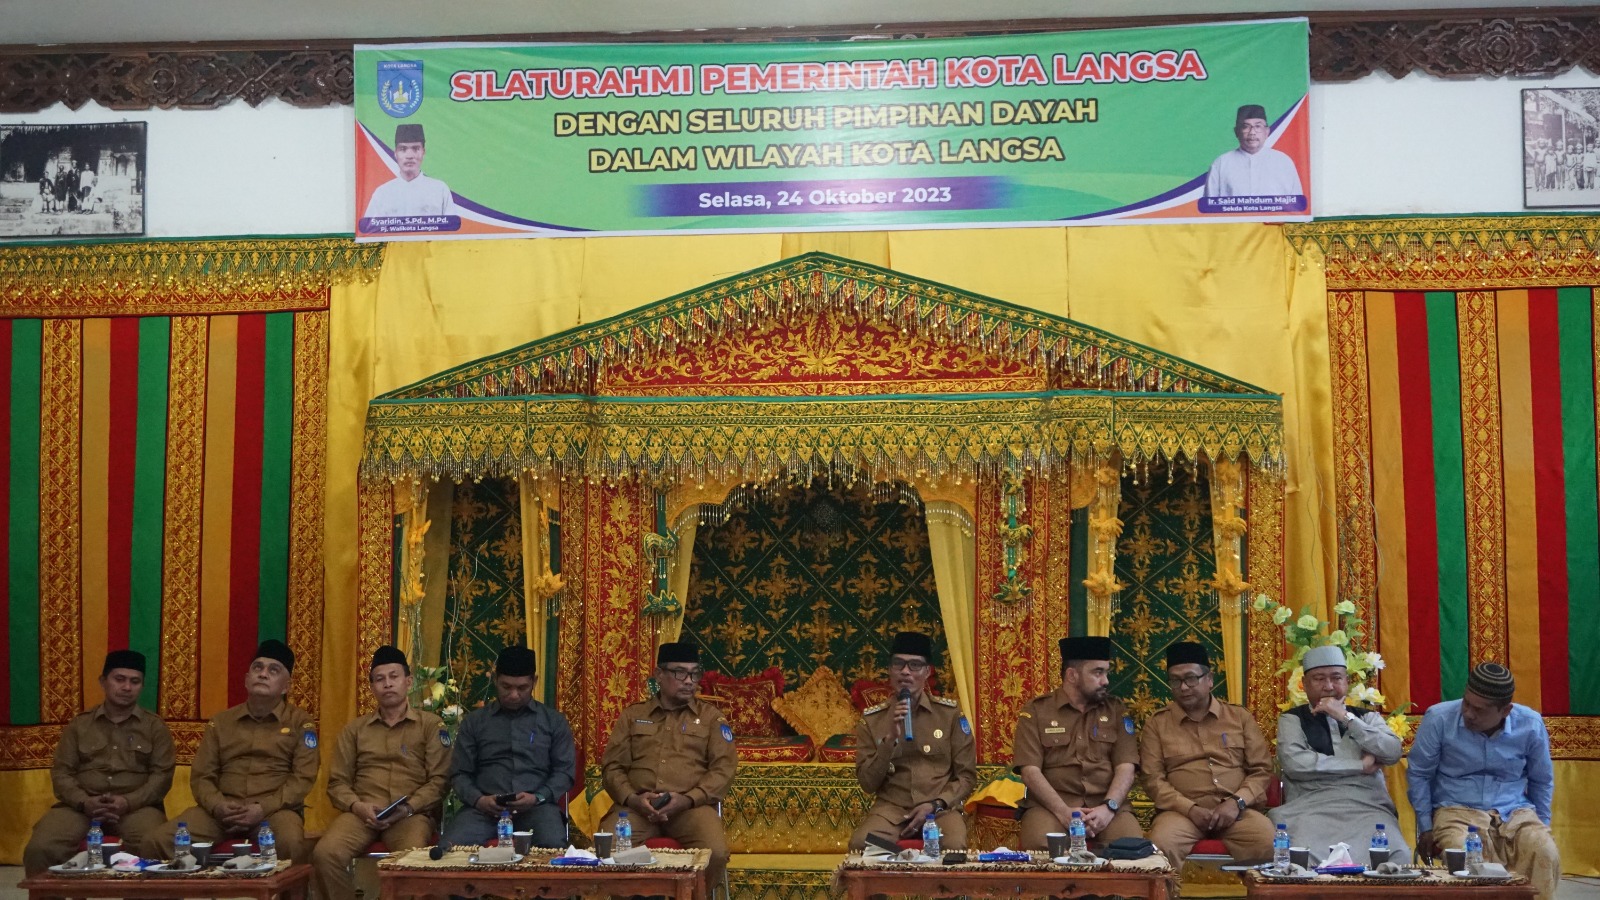 Pj Walikota Langsa Syaridin S.Pd., M.Pd melakukan silaturahmi dengan seluruh pimpinan Dayah dalam wilayah kota Langsa